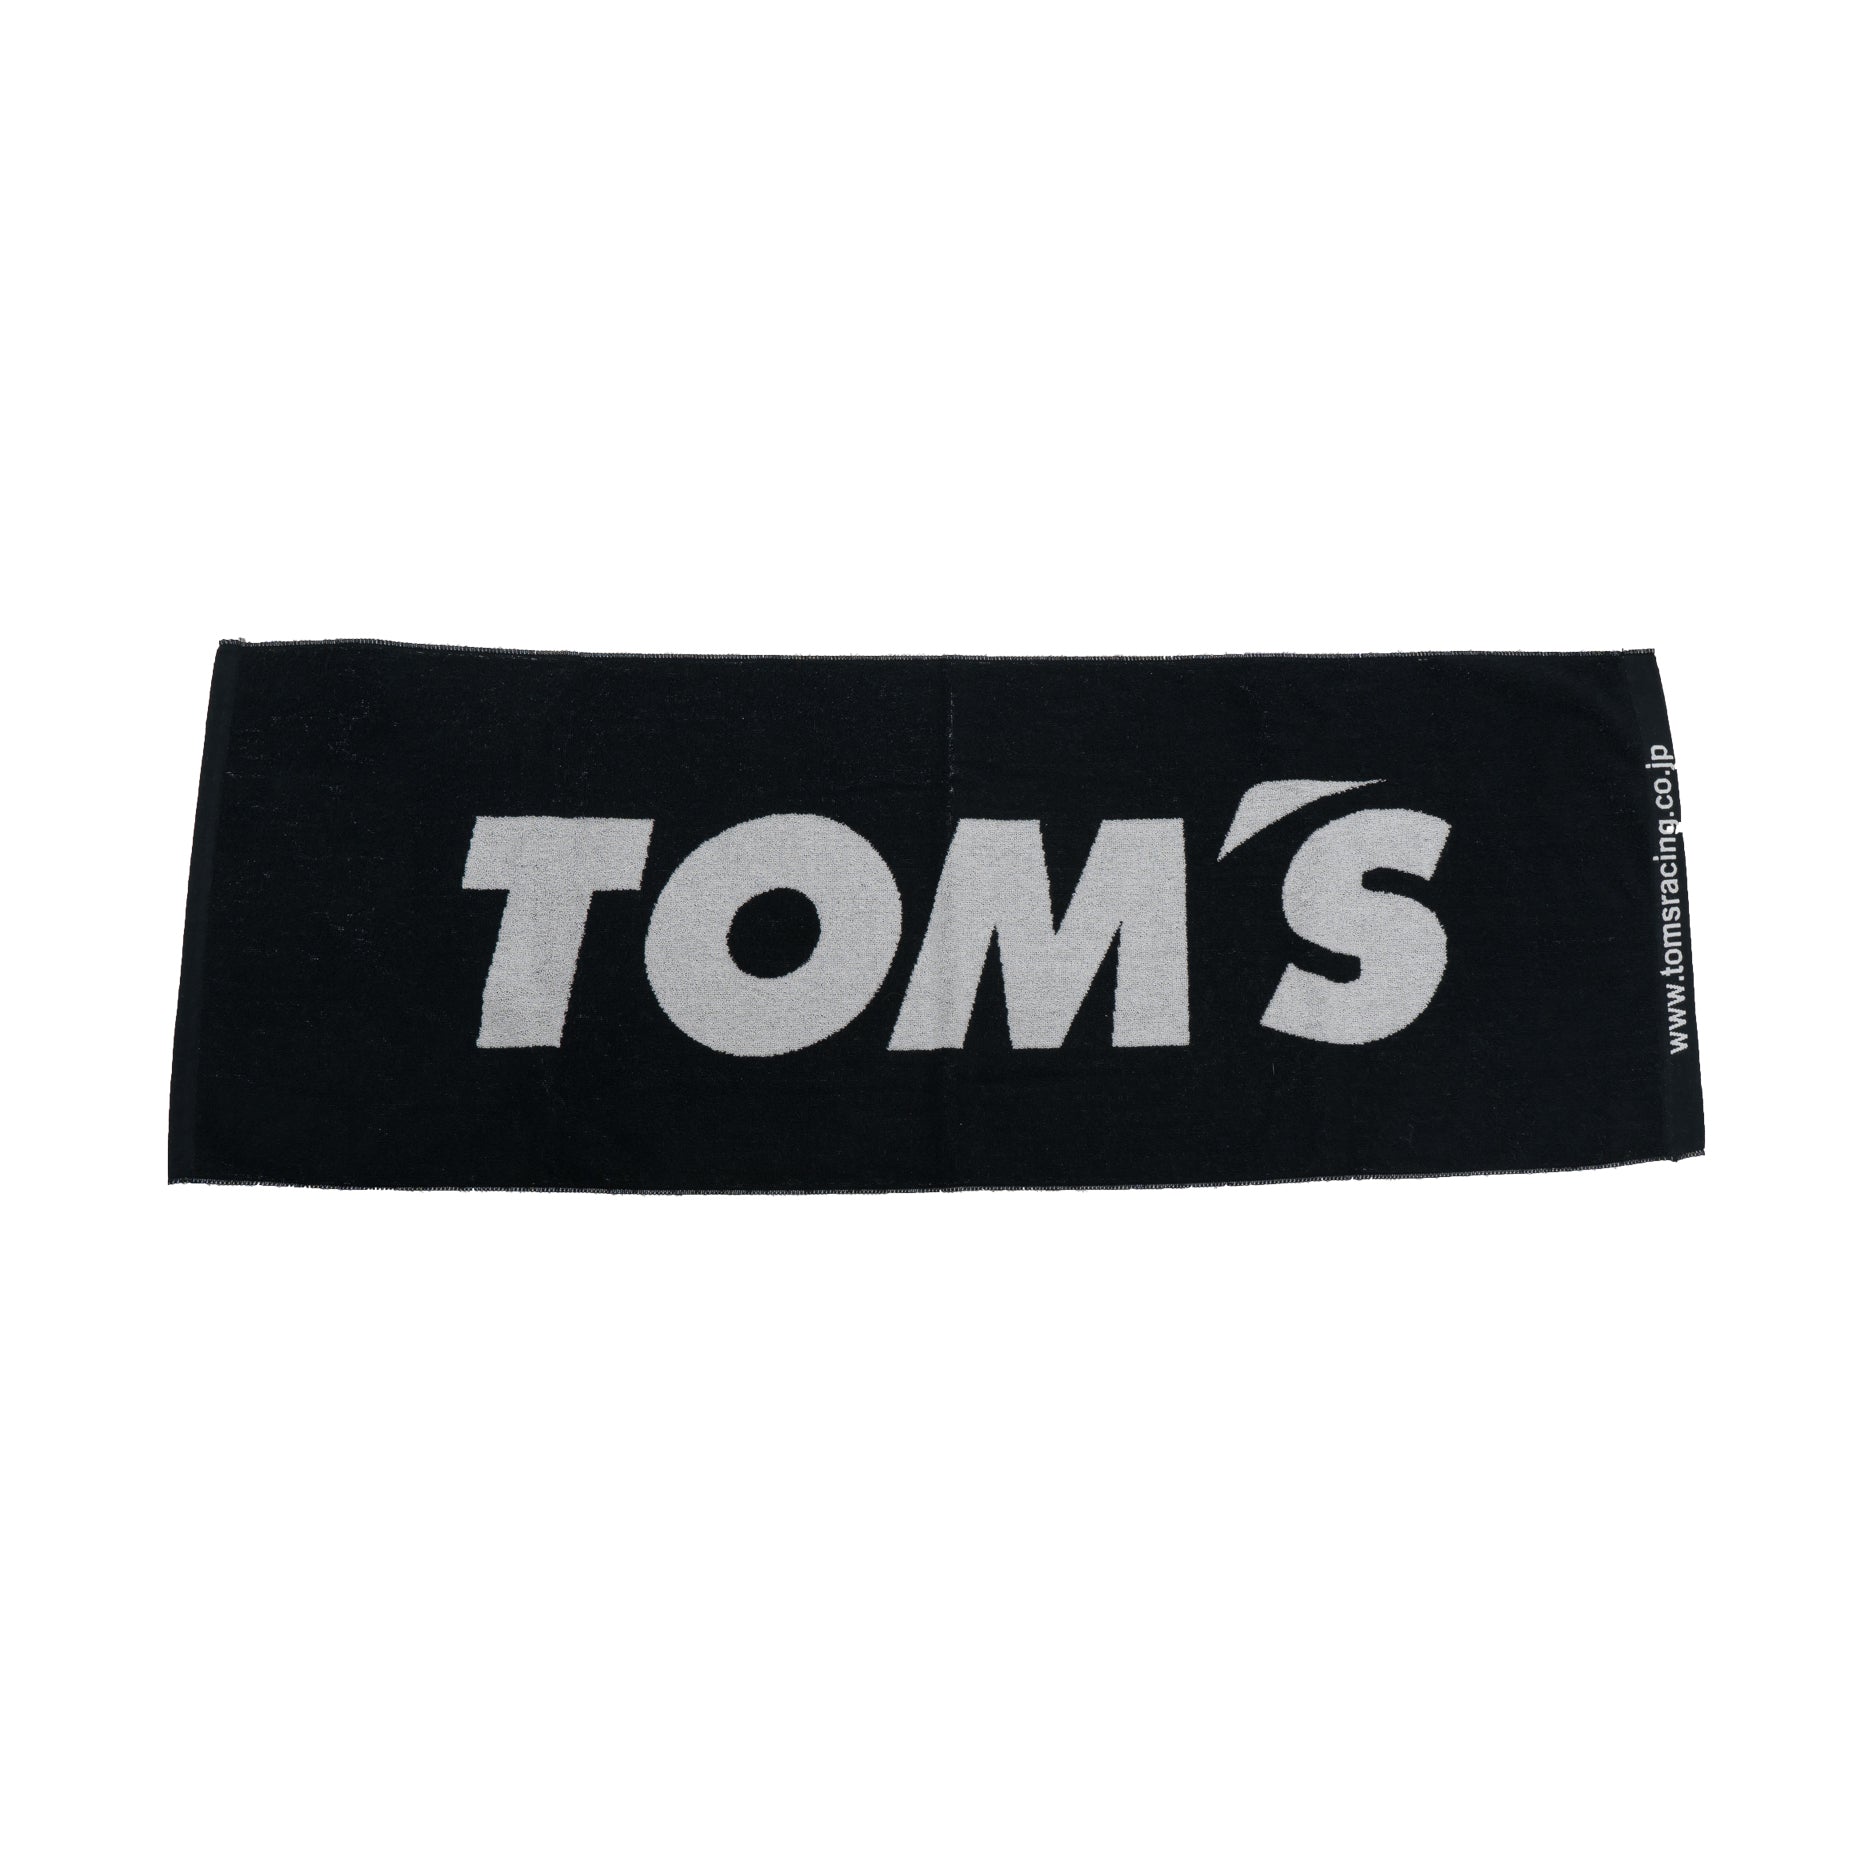 TOM'S Racing - Team Towel - 0